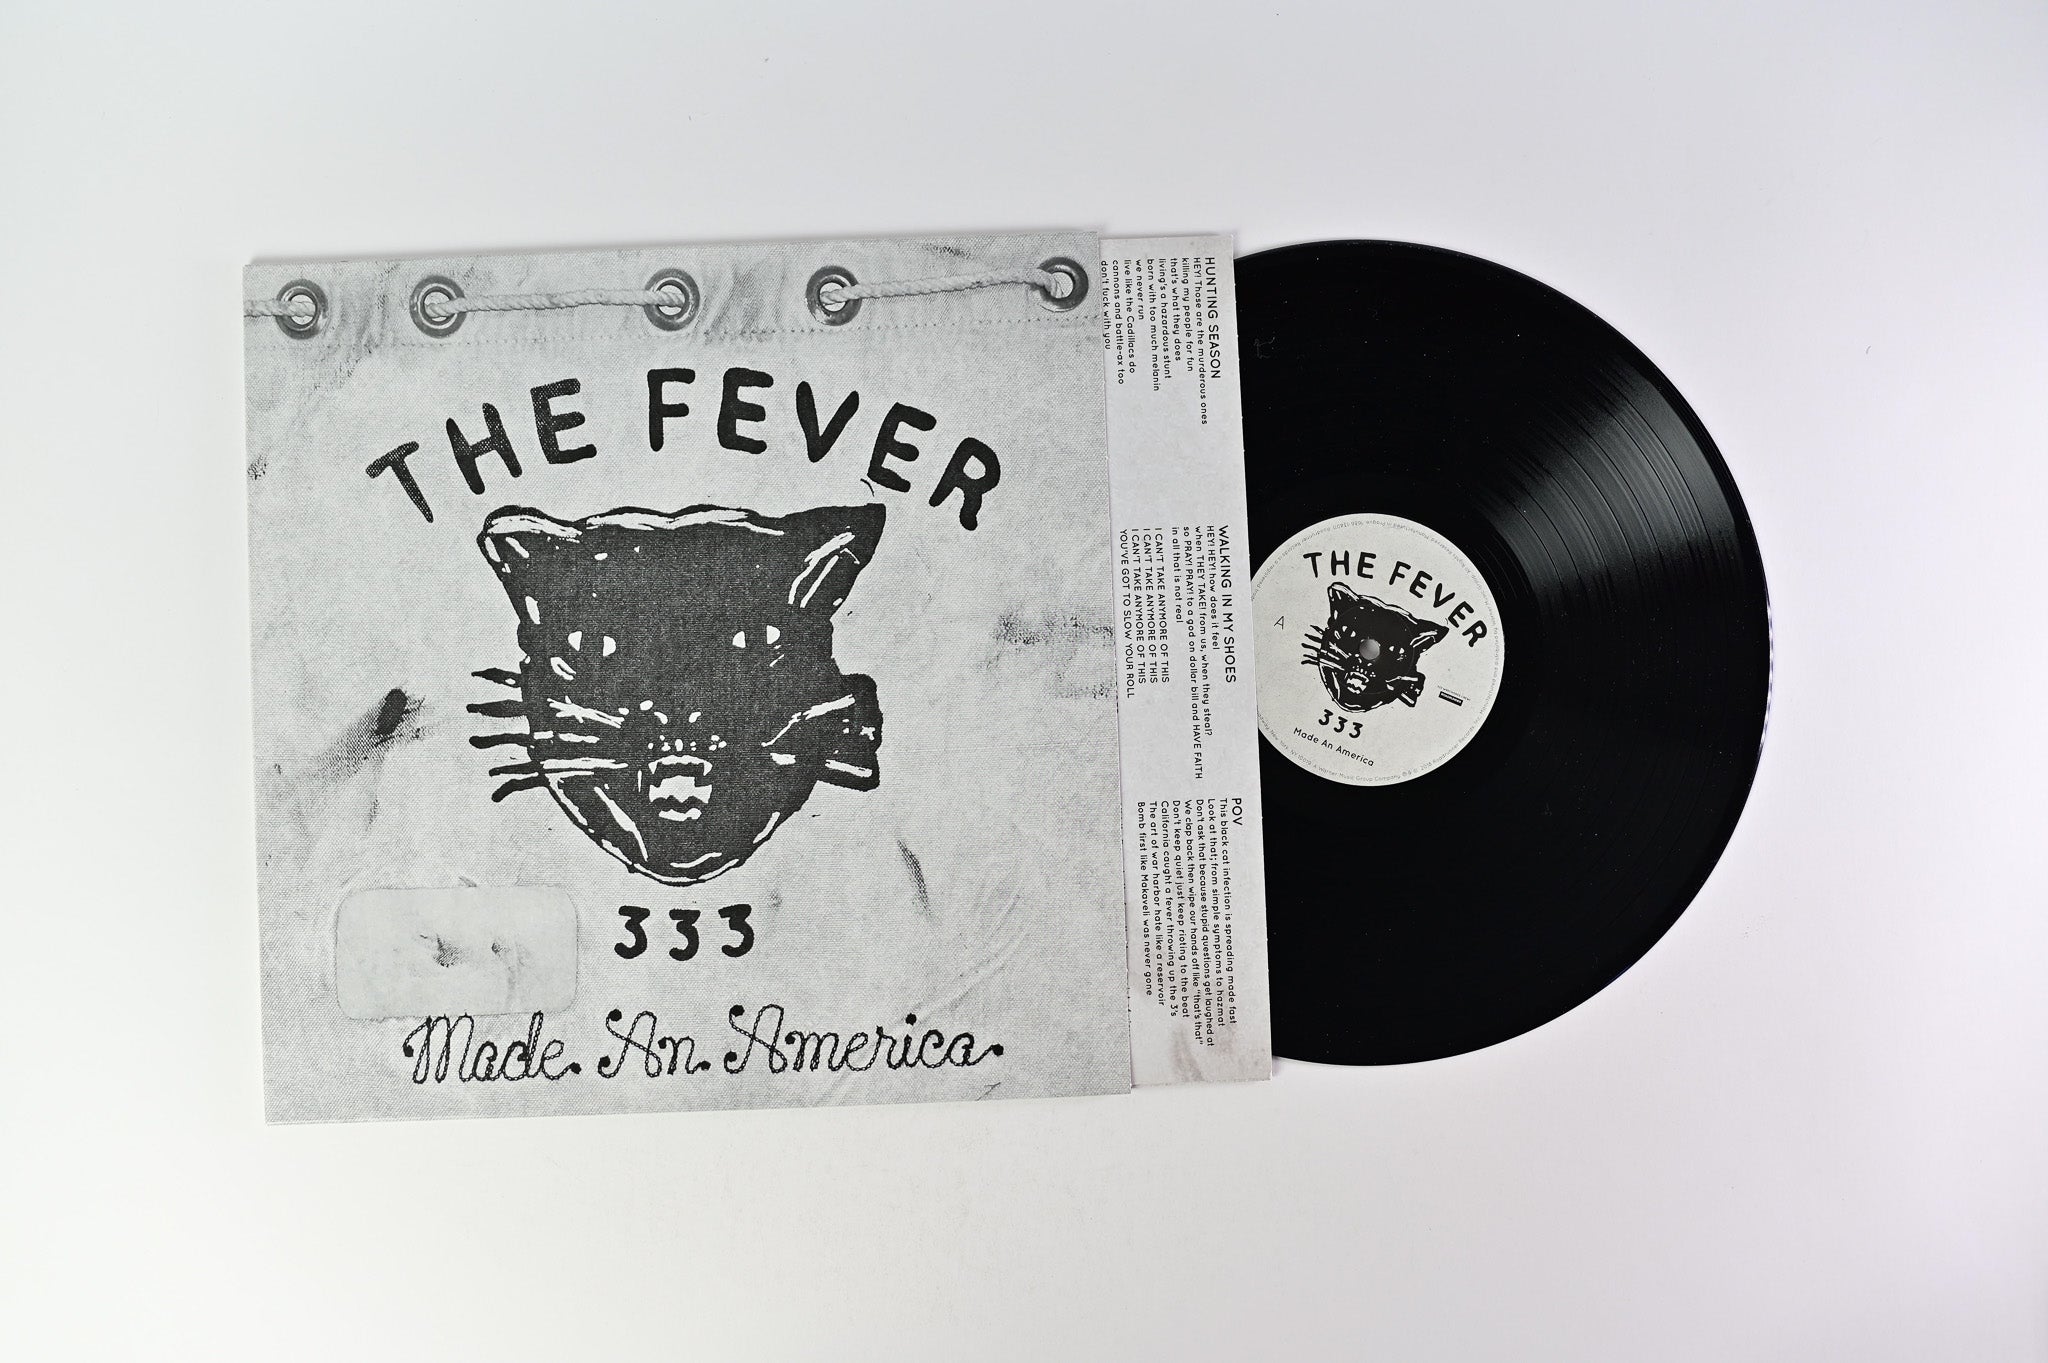 The Fever 333 - Made An America on Roadrunner Single Sided EP